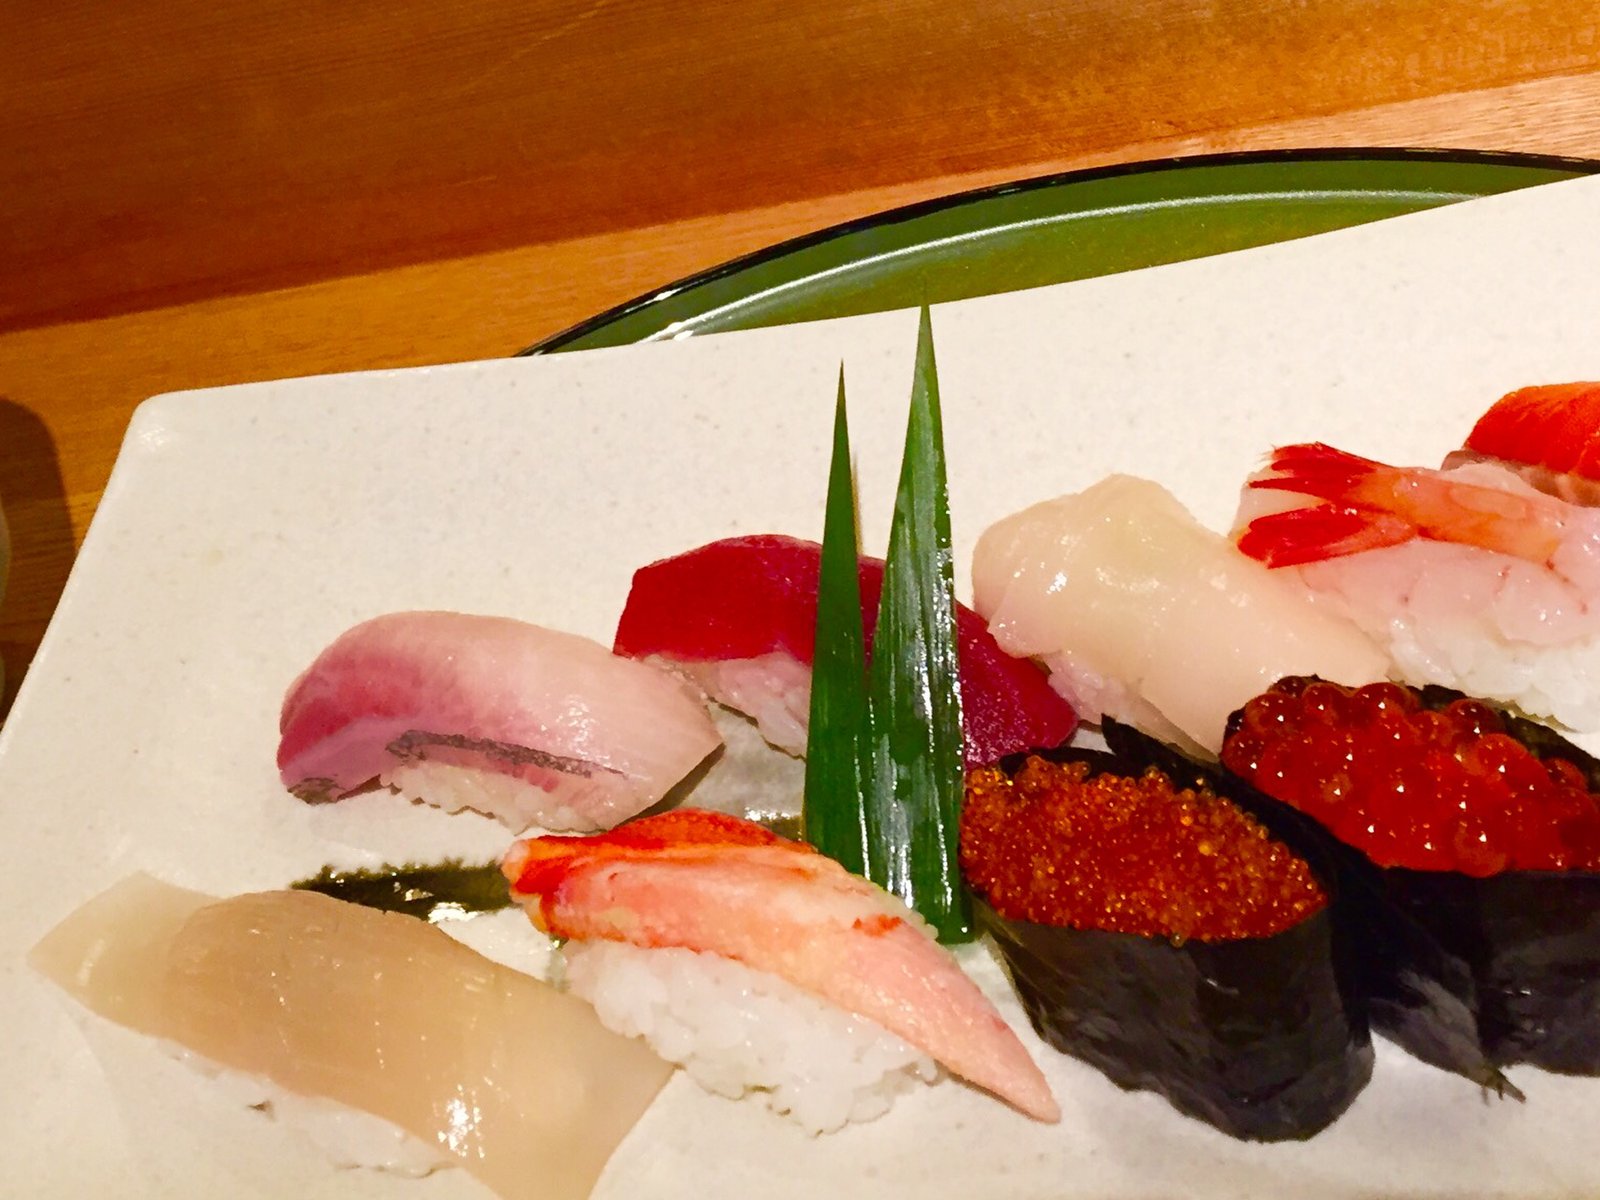 小樽でふらっと入りたいおいしいお寿司屋 おたるすし田で食べるうまい寿司 Playlife プレイライフ